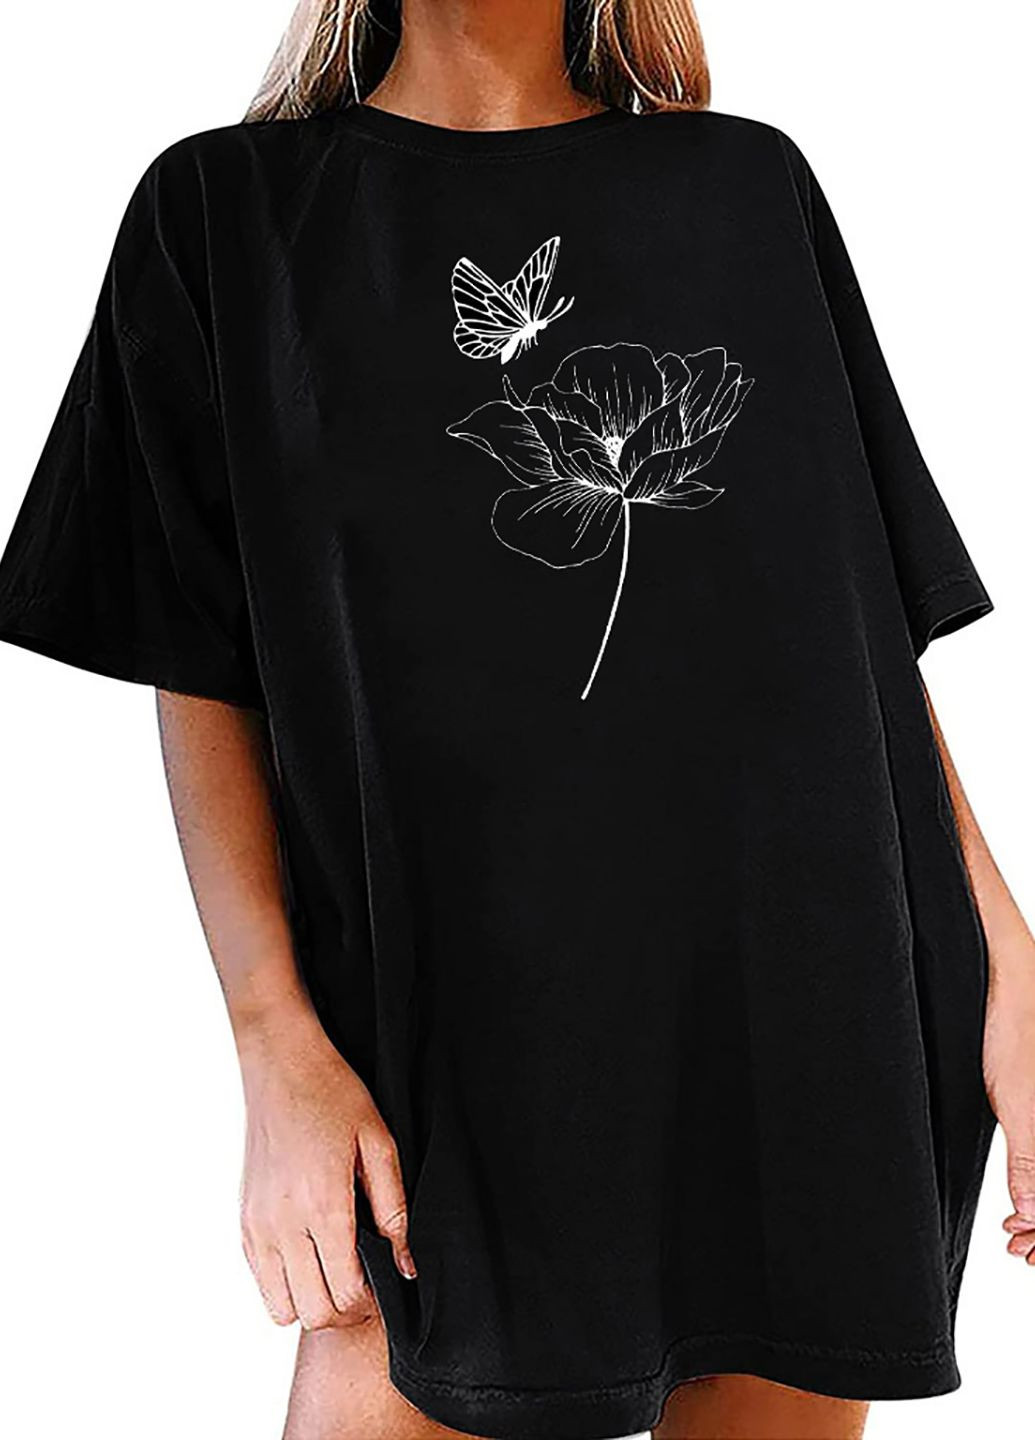 Черное платье-футболка черное с удлиненным рукавом lepidopteran landscape Love&Live с рисунком